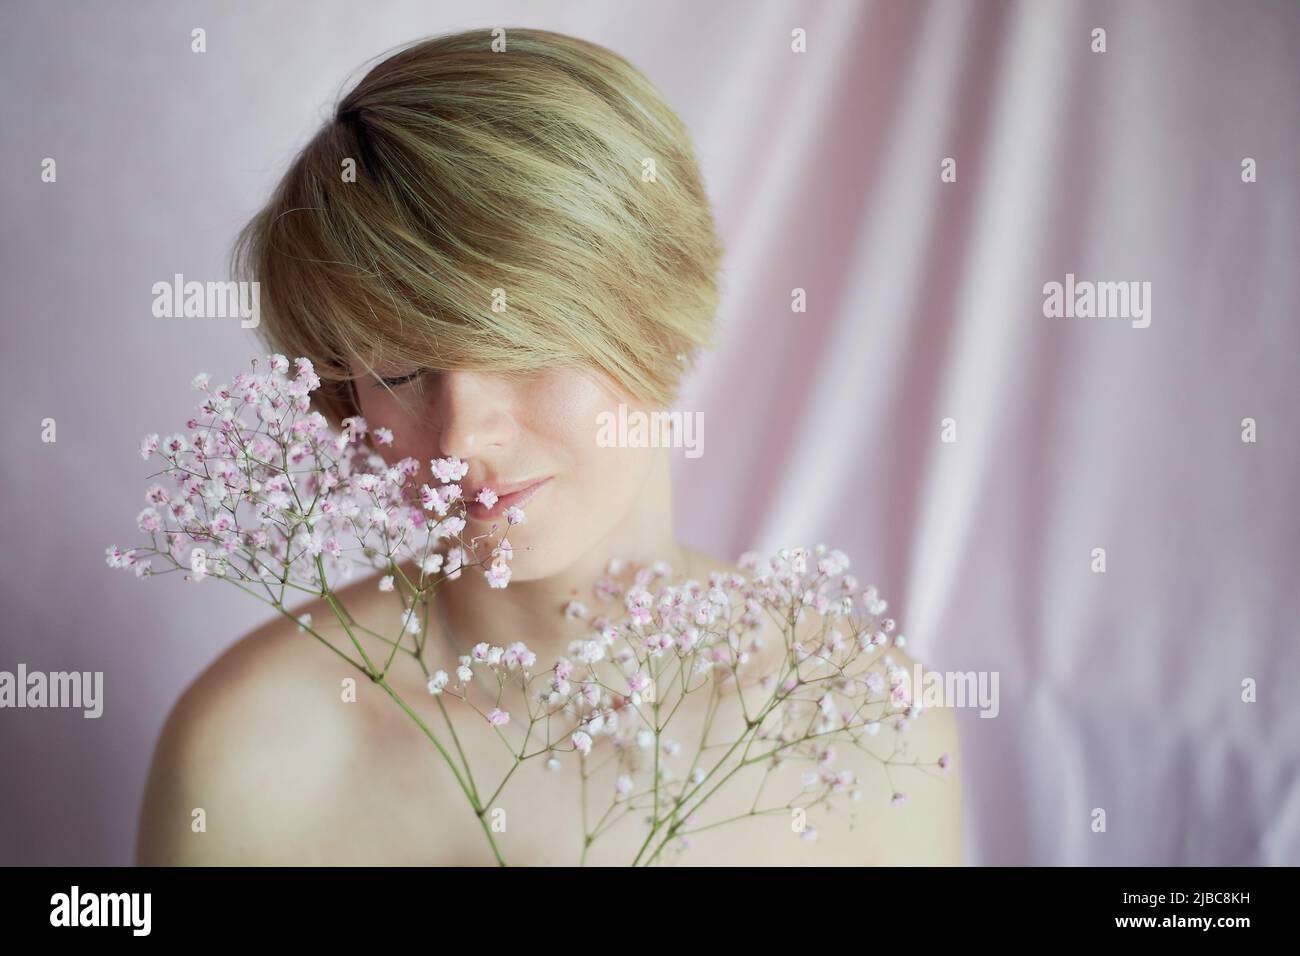 Ritratto di una ragazza su sfondo rosa con fiori. Tenerezza e femminilità. La sfera della bellezza e della salute delle donne. Taglio corto, capelli biondi Foto Stock